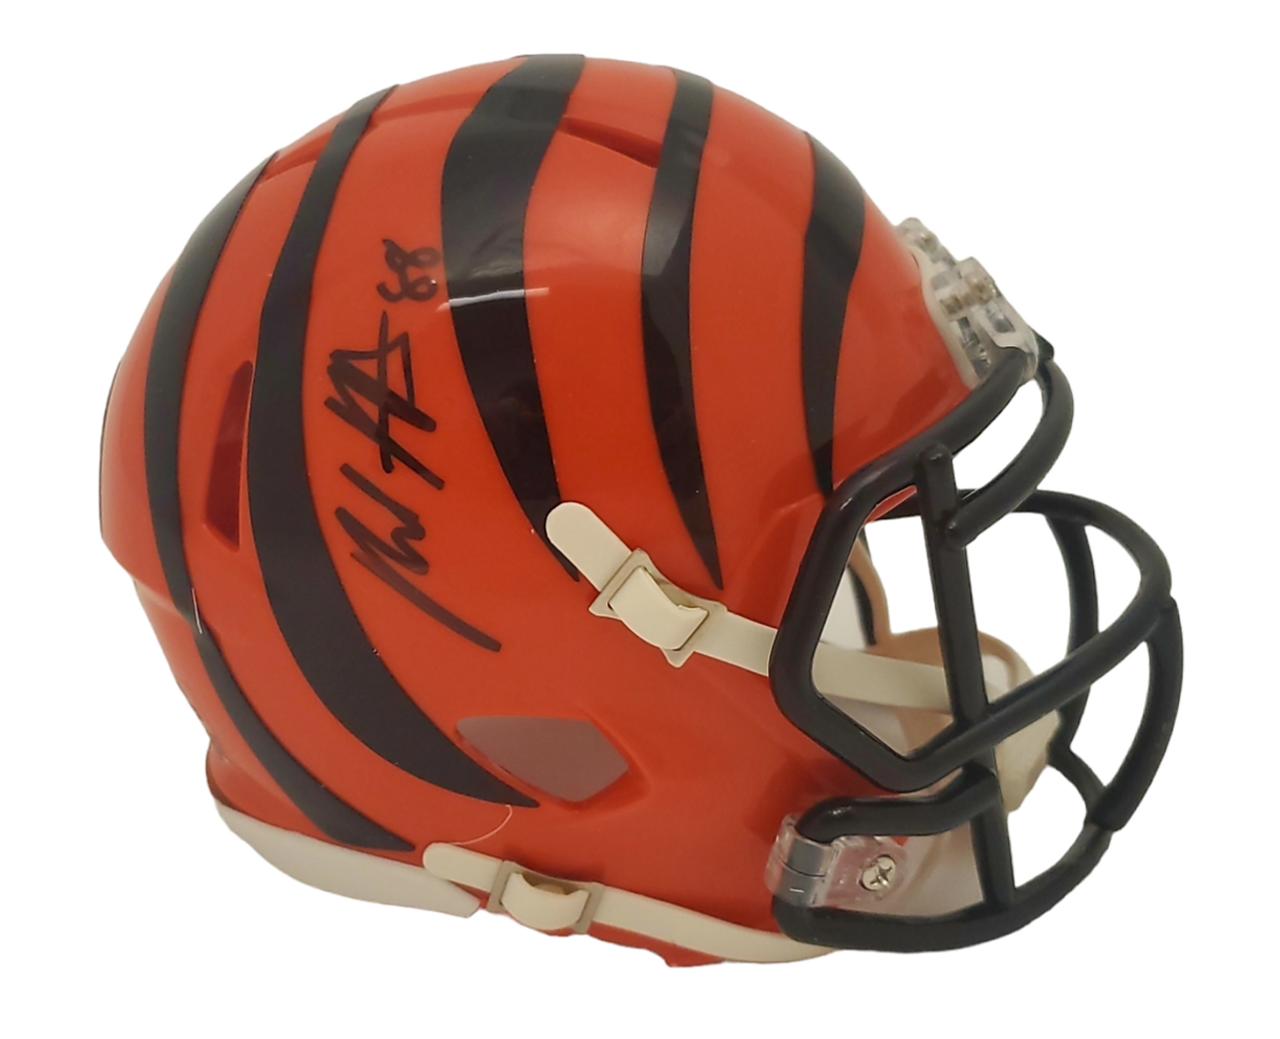 Hayden Hurst Cincinnati Bengals Autographed Orange Jersey - JSA